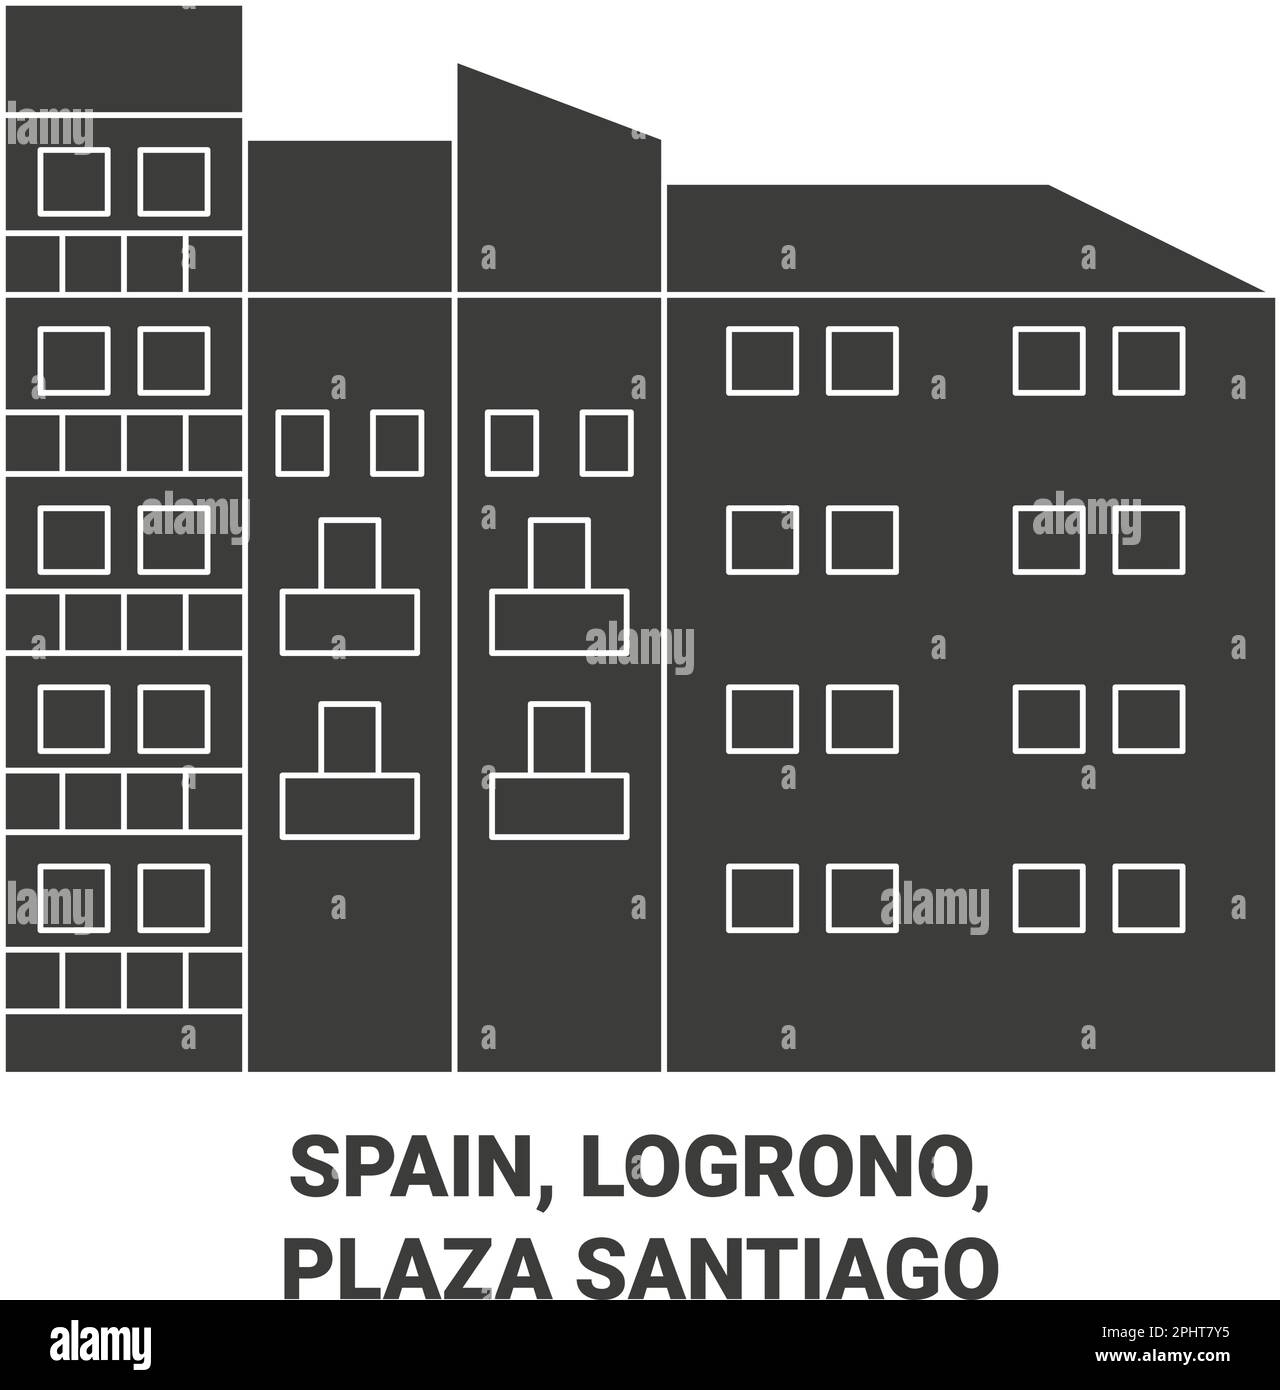 Espagne, Logrono, Plaza Santiago voyage illustration vecteur Illustration de Vecteur